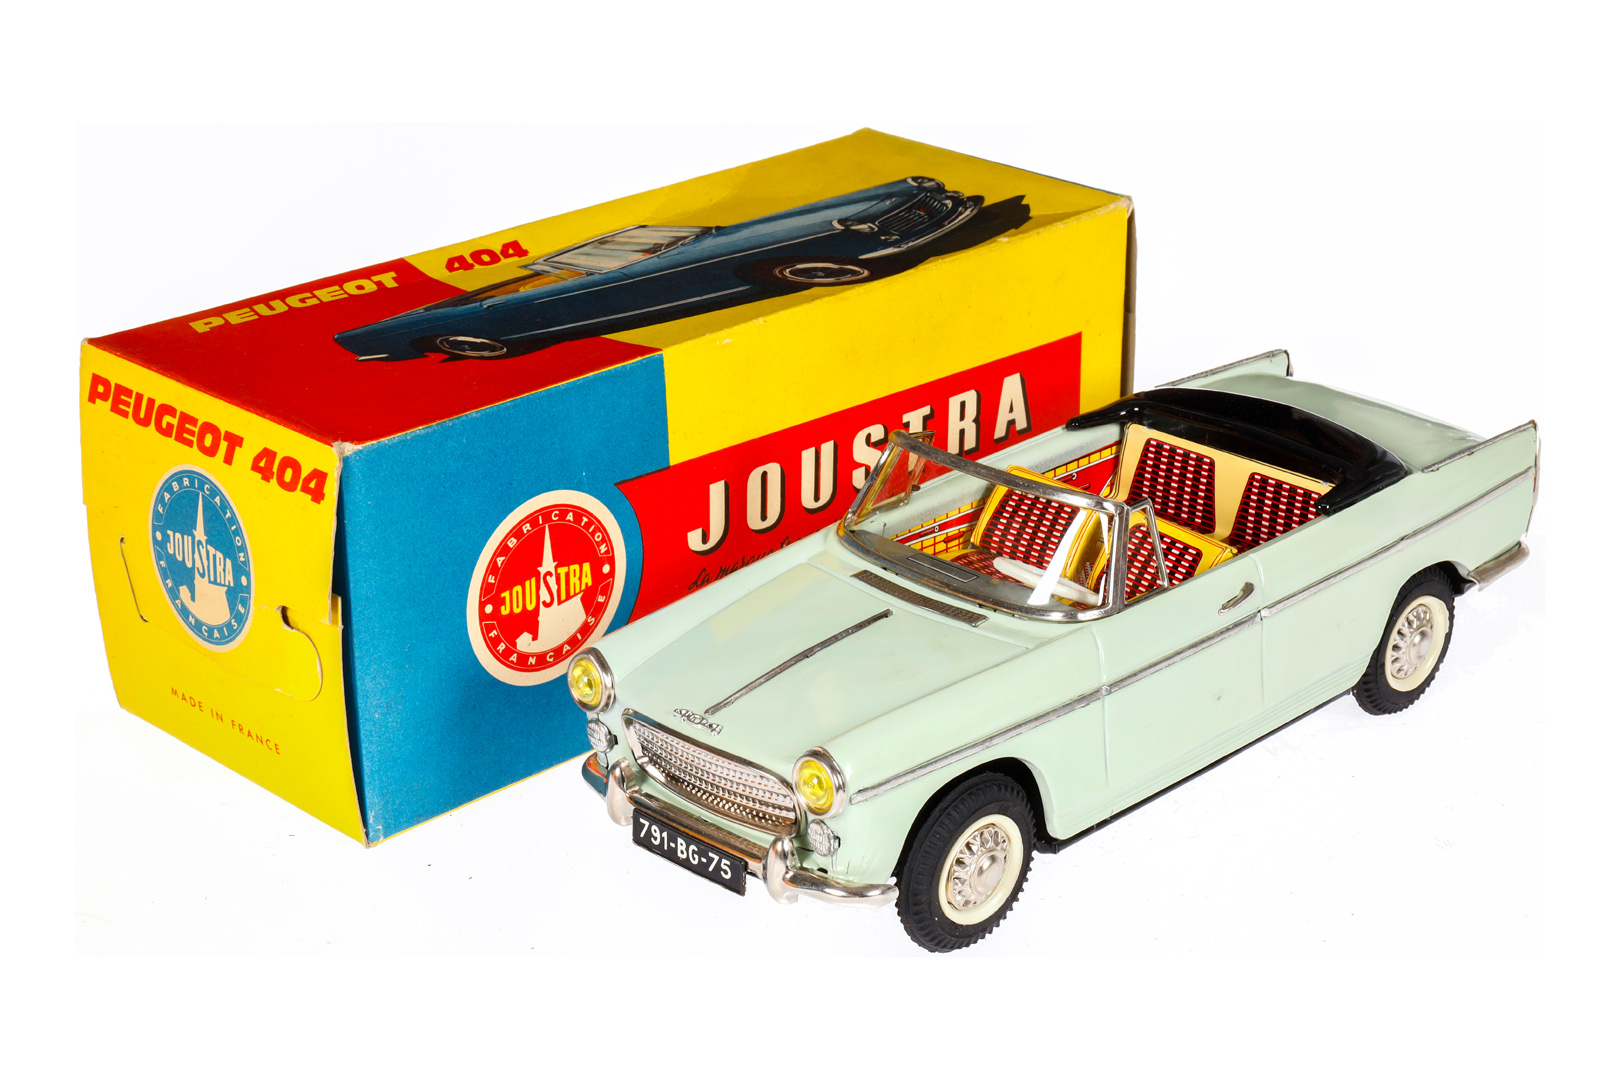 Joustra Peugeot Cabrio ”404” 2066, Blech, mint, Friktion, LS und Alterungsspuren, L 30, im leicht